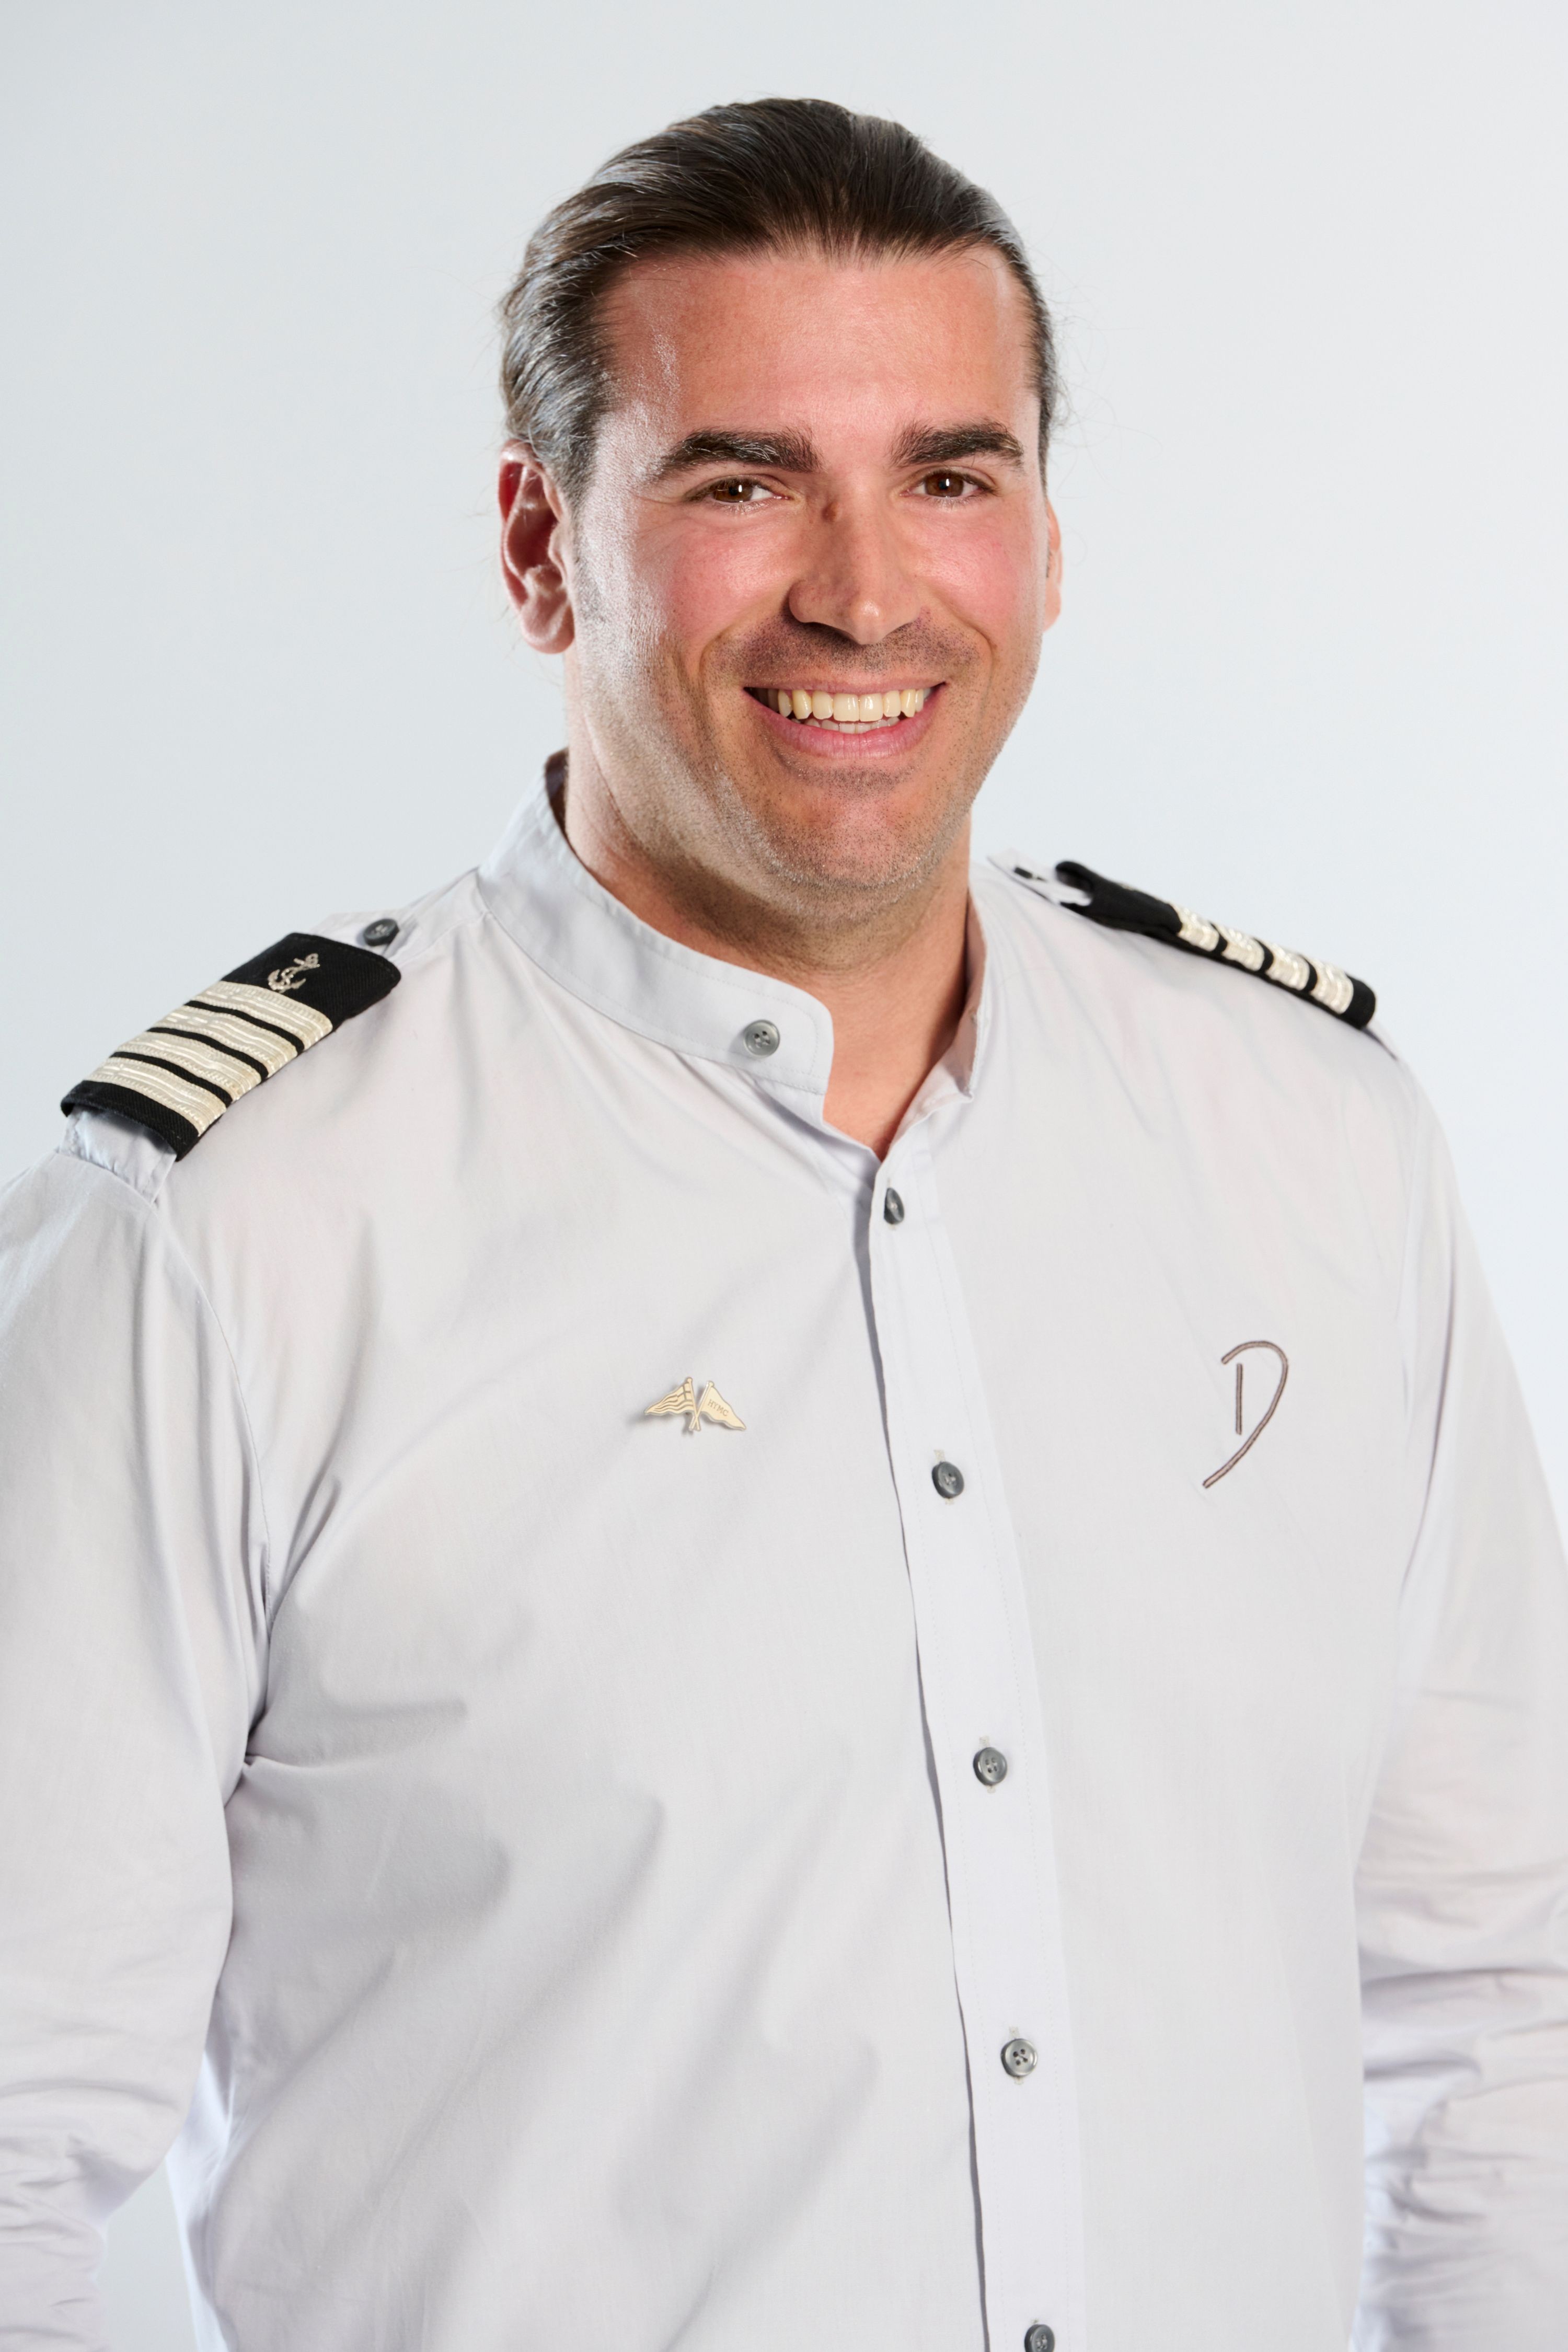 Captain Michael Deliezas image